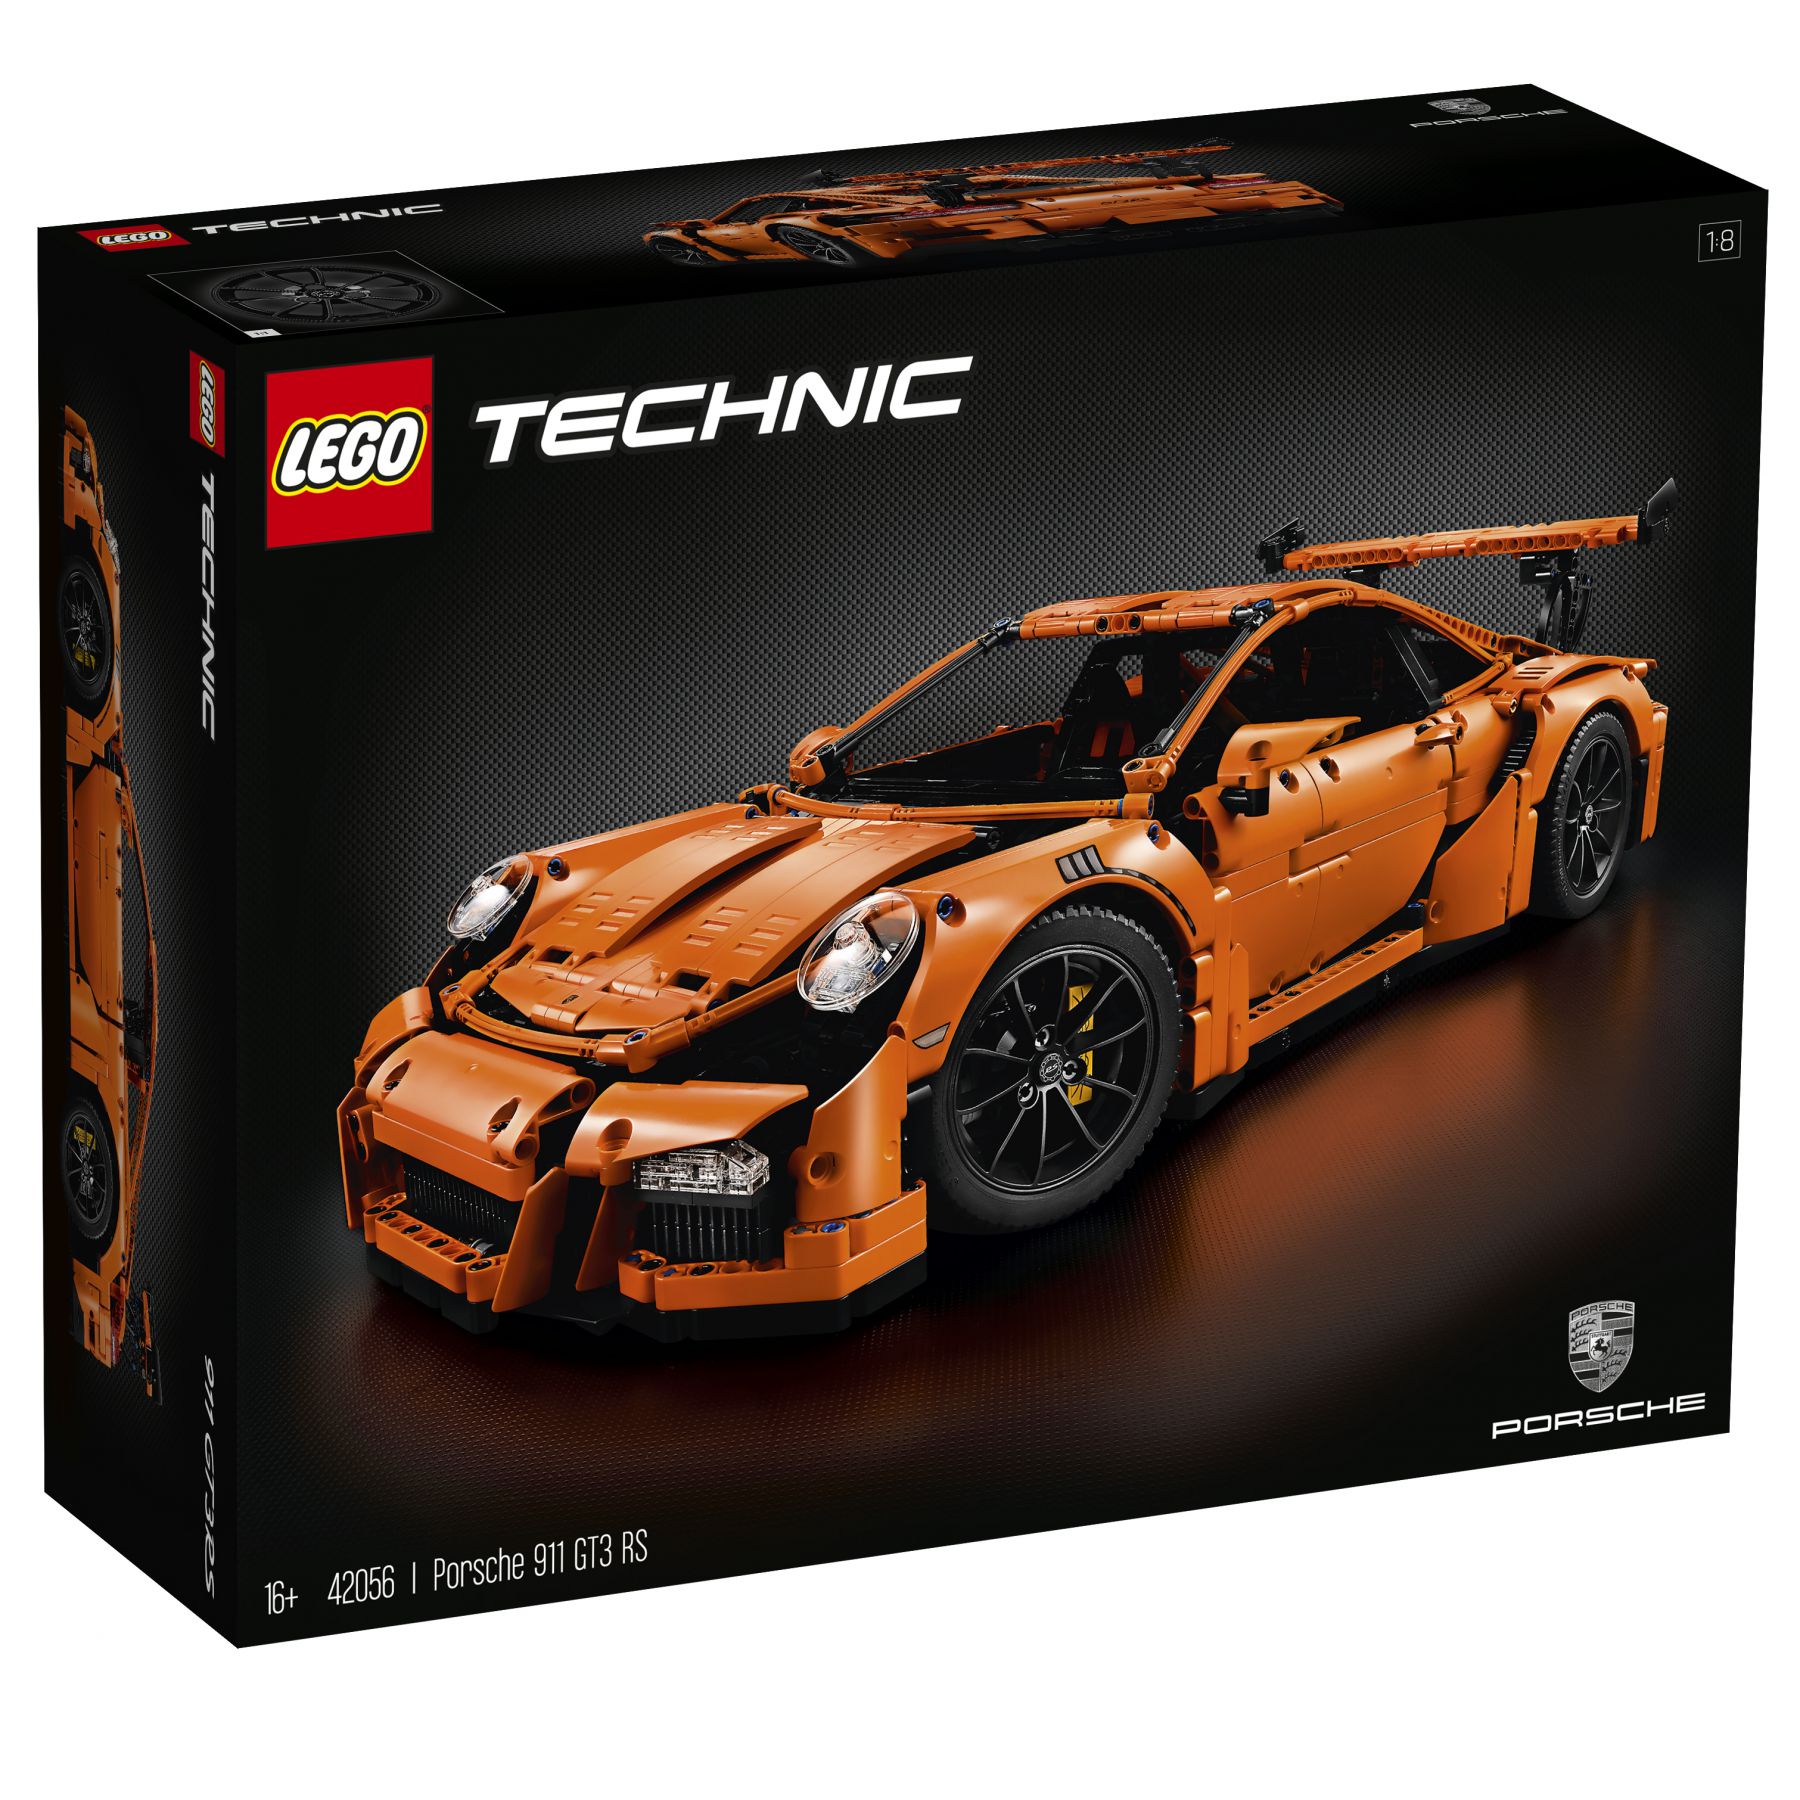 LEGO Technic 42056 Porsche 911 GT3 RS LEGO_Porsche_911_42056-1_box.jpg